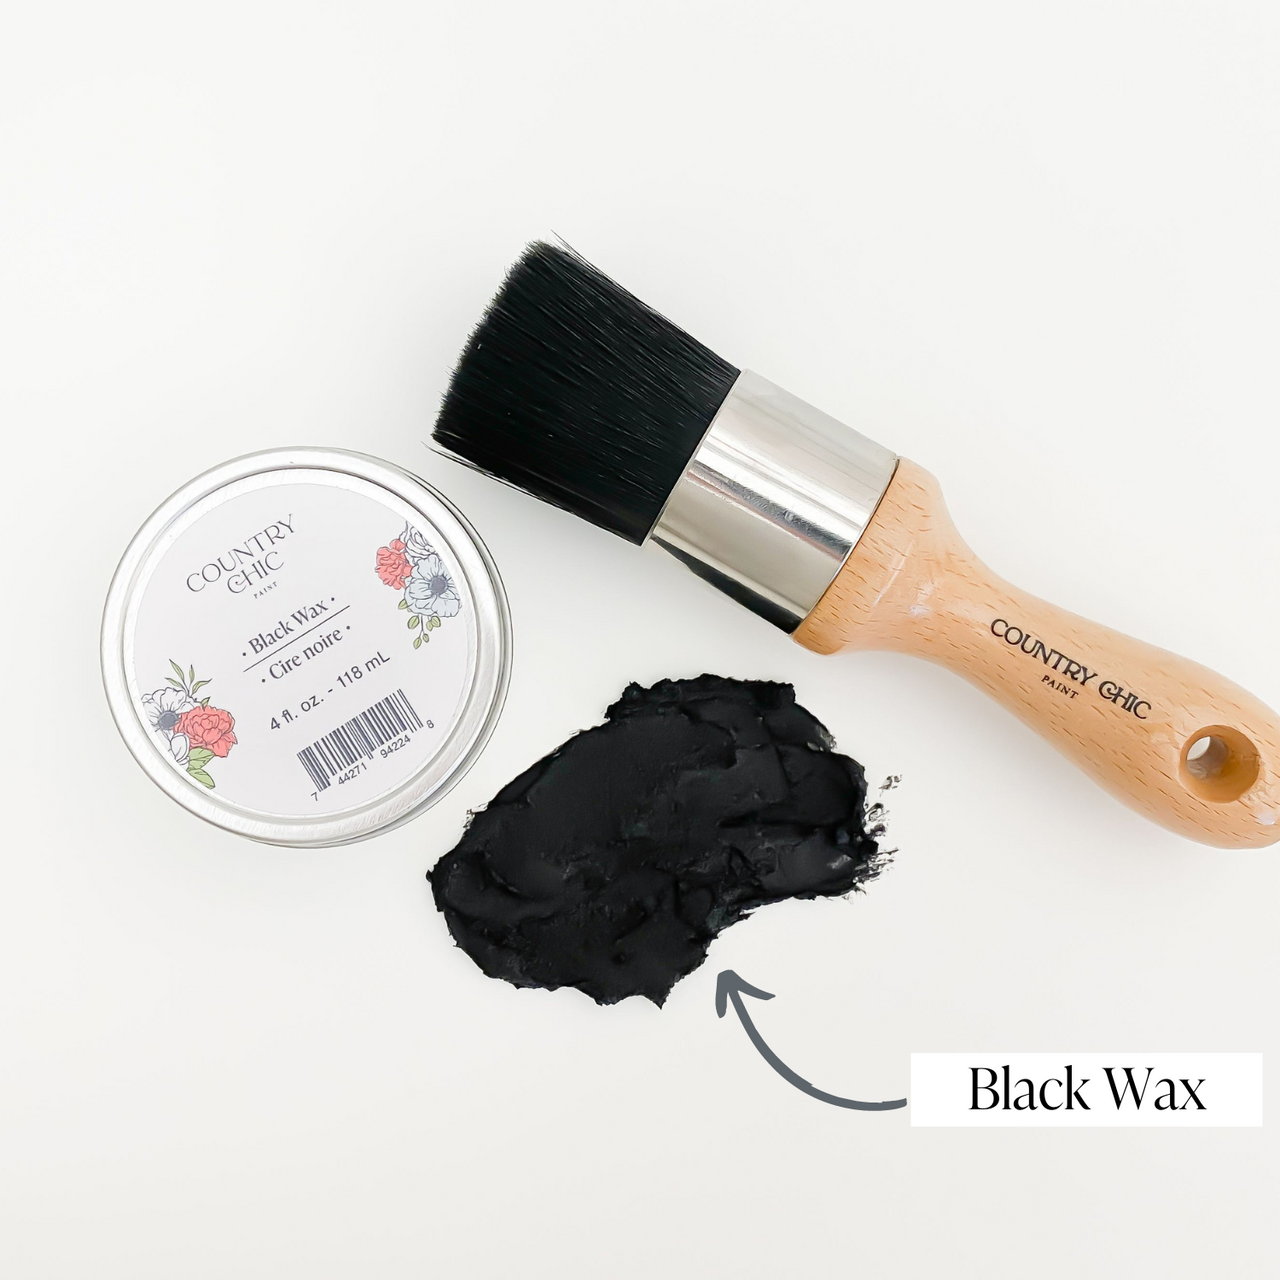 Black Chalk Paint® Wax